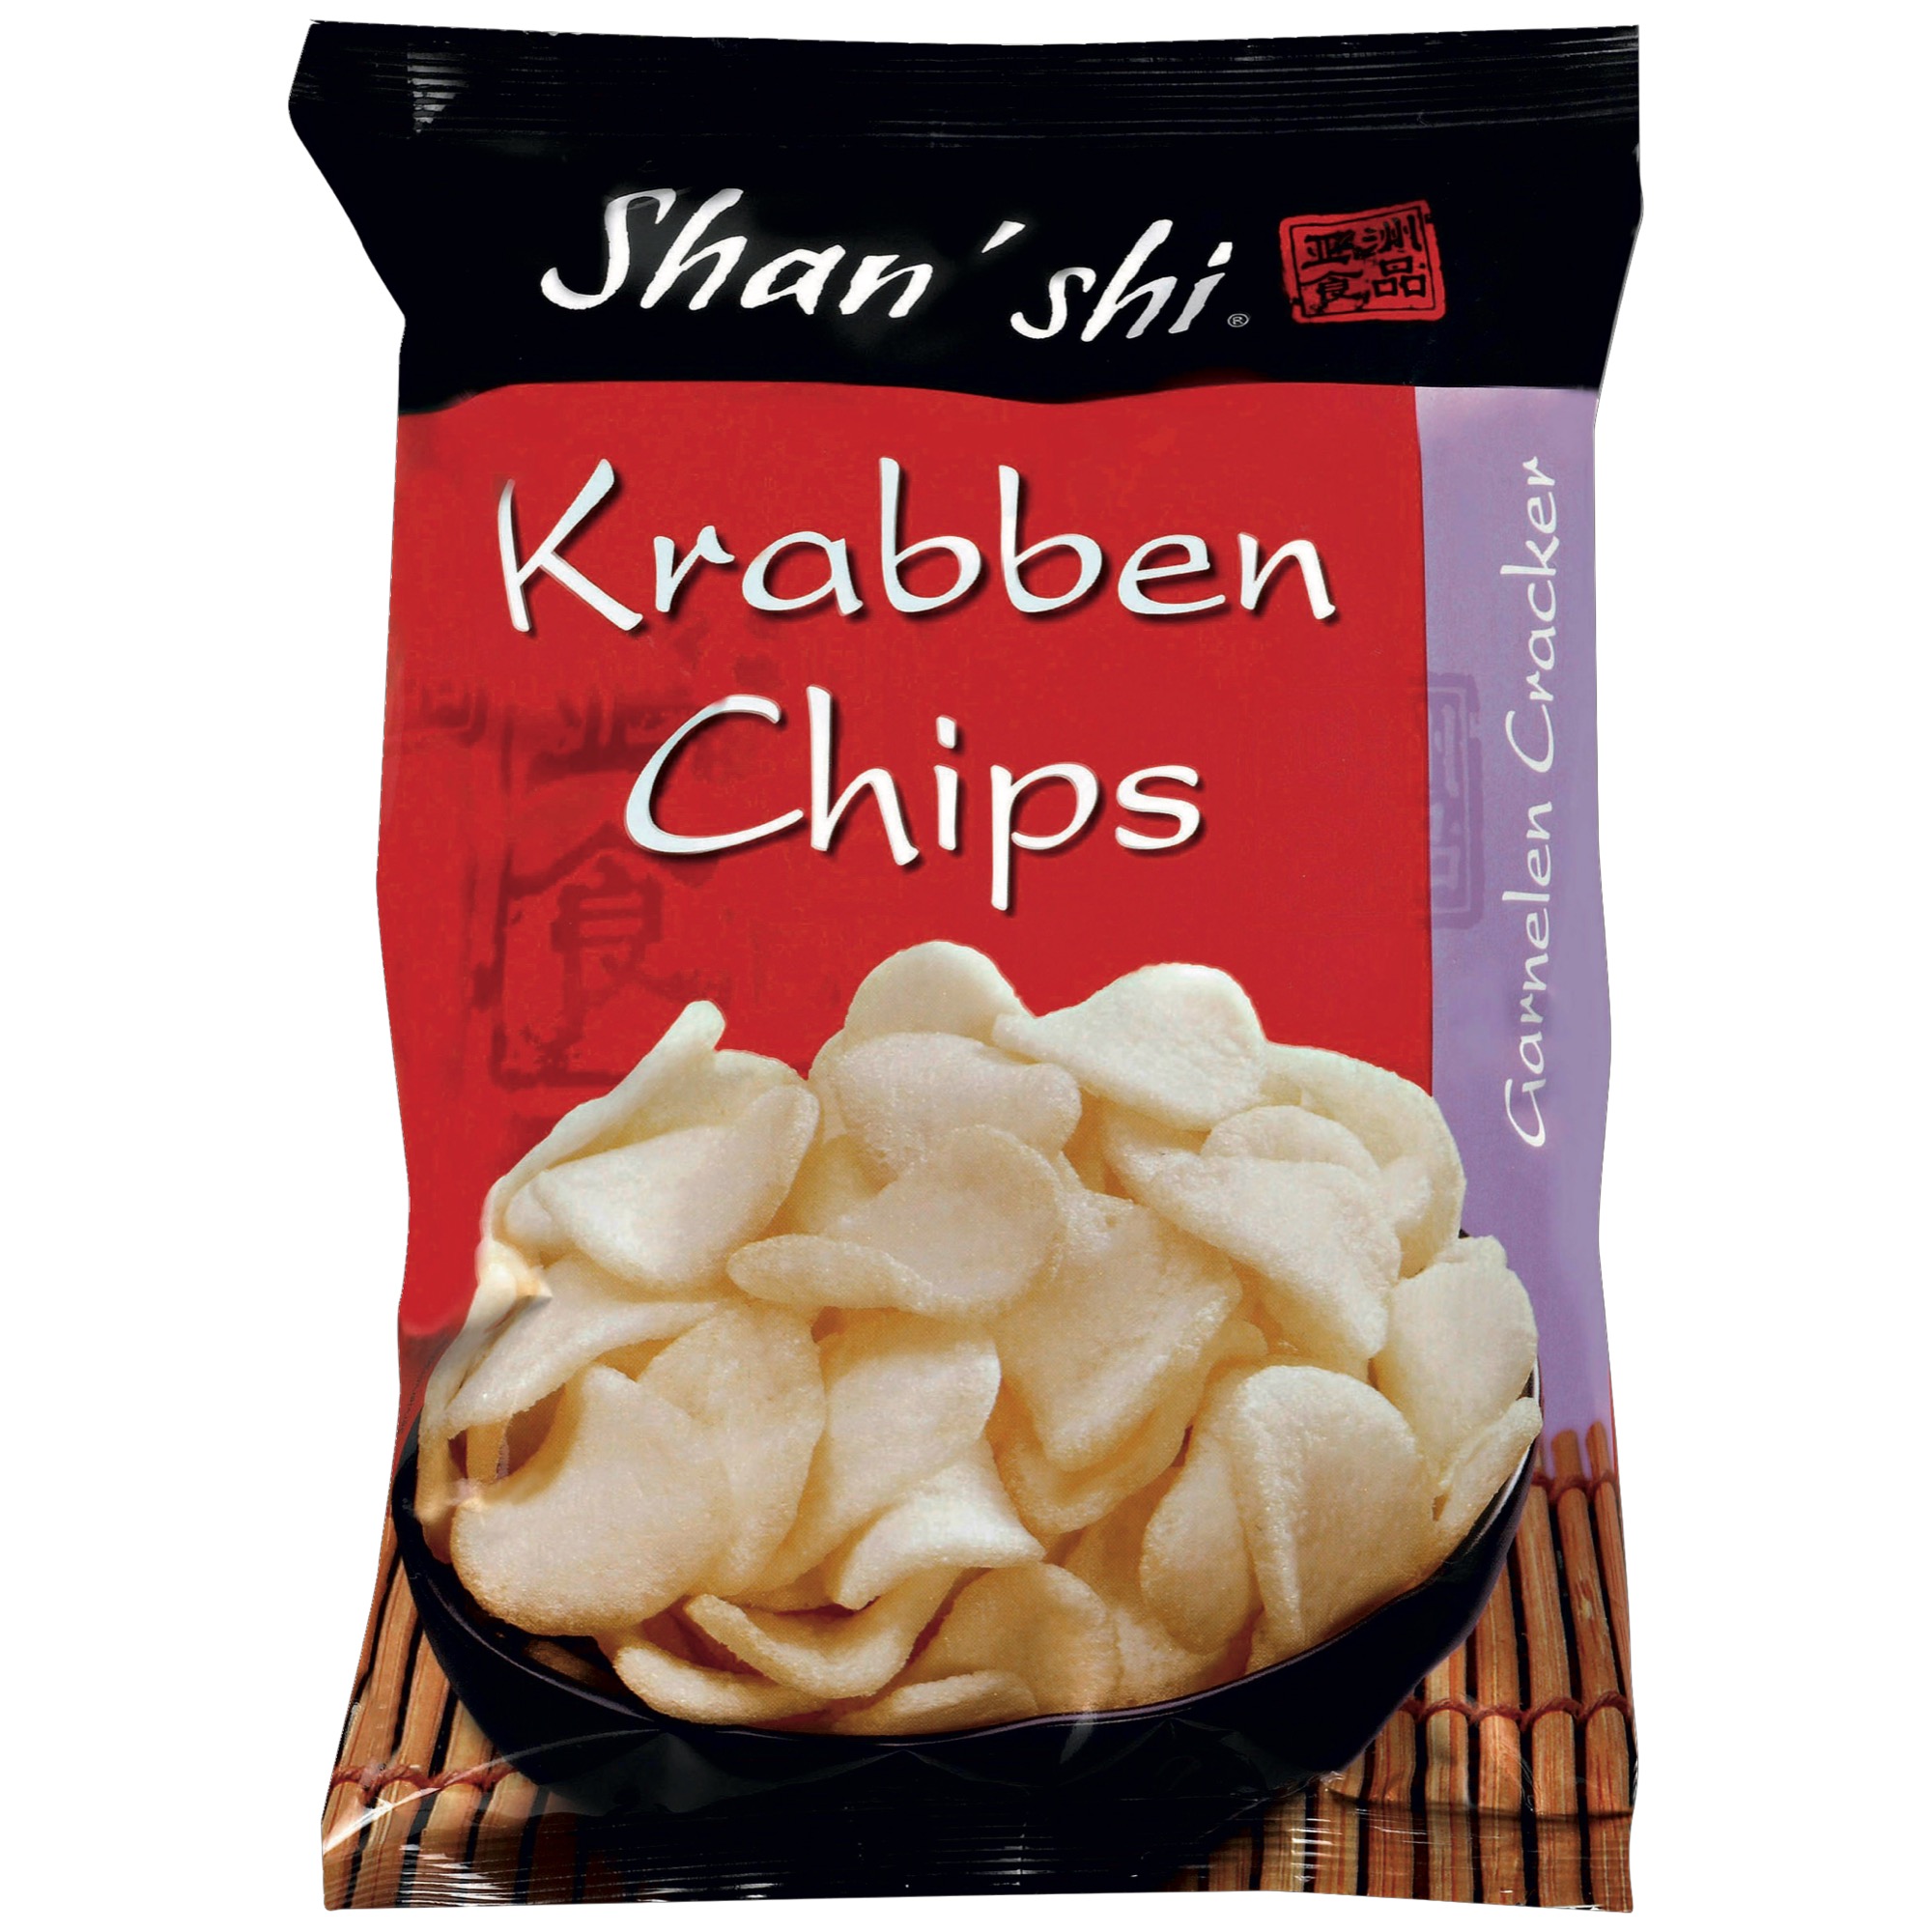 Shan Shi Krabben Chips 50g, Classic